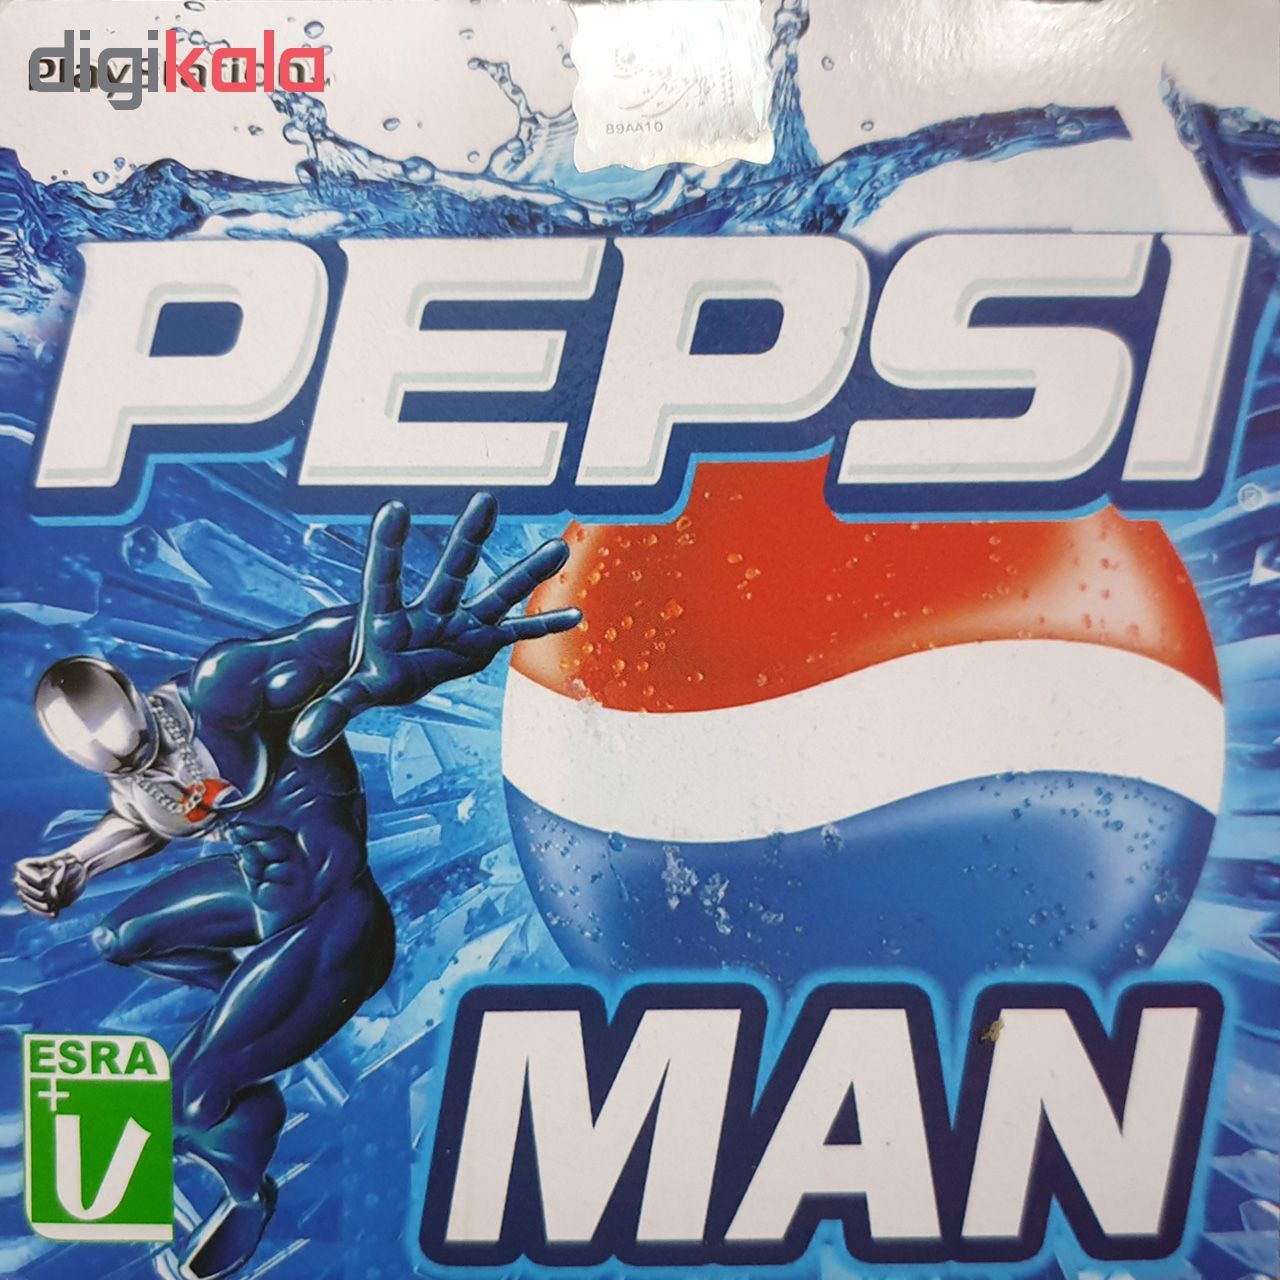 بازی Pepsiman مخصوص PS1